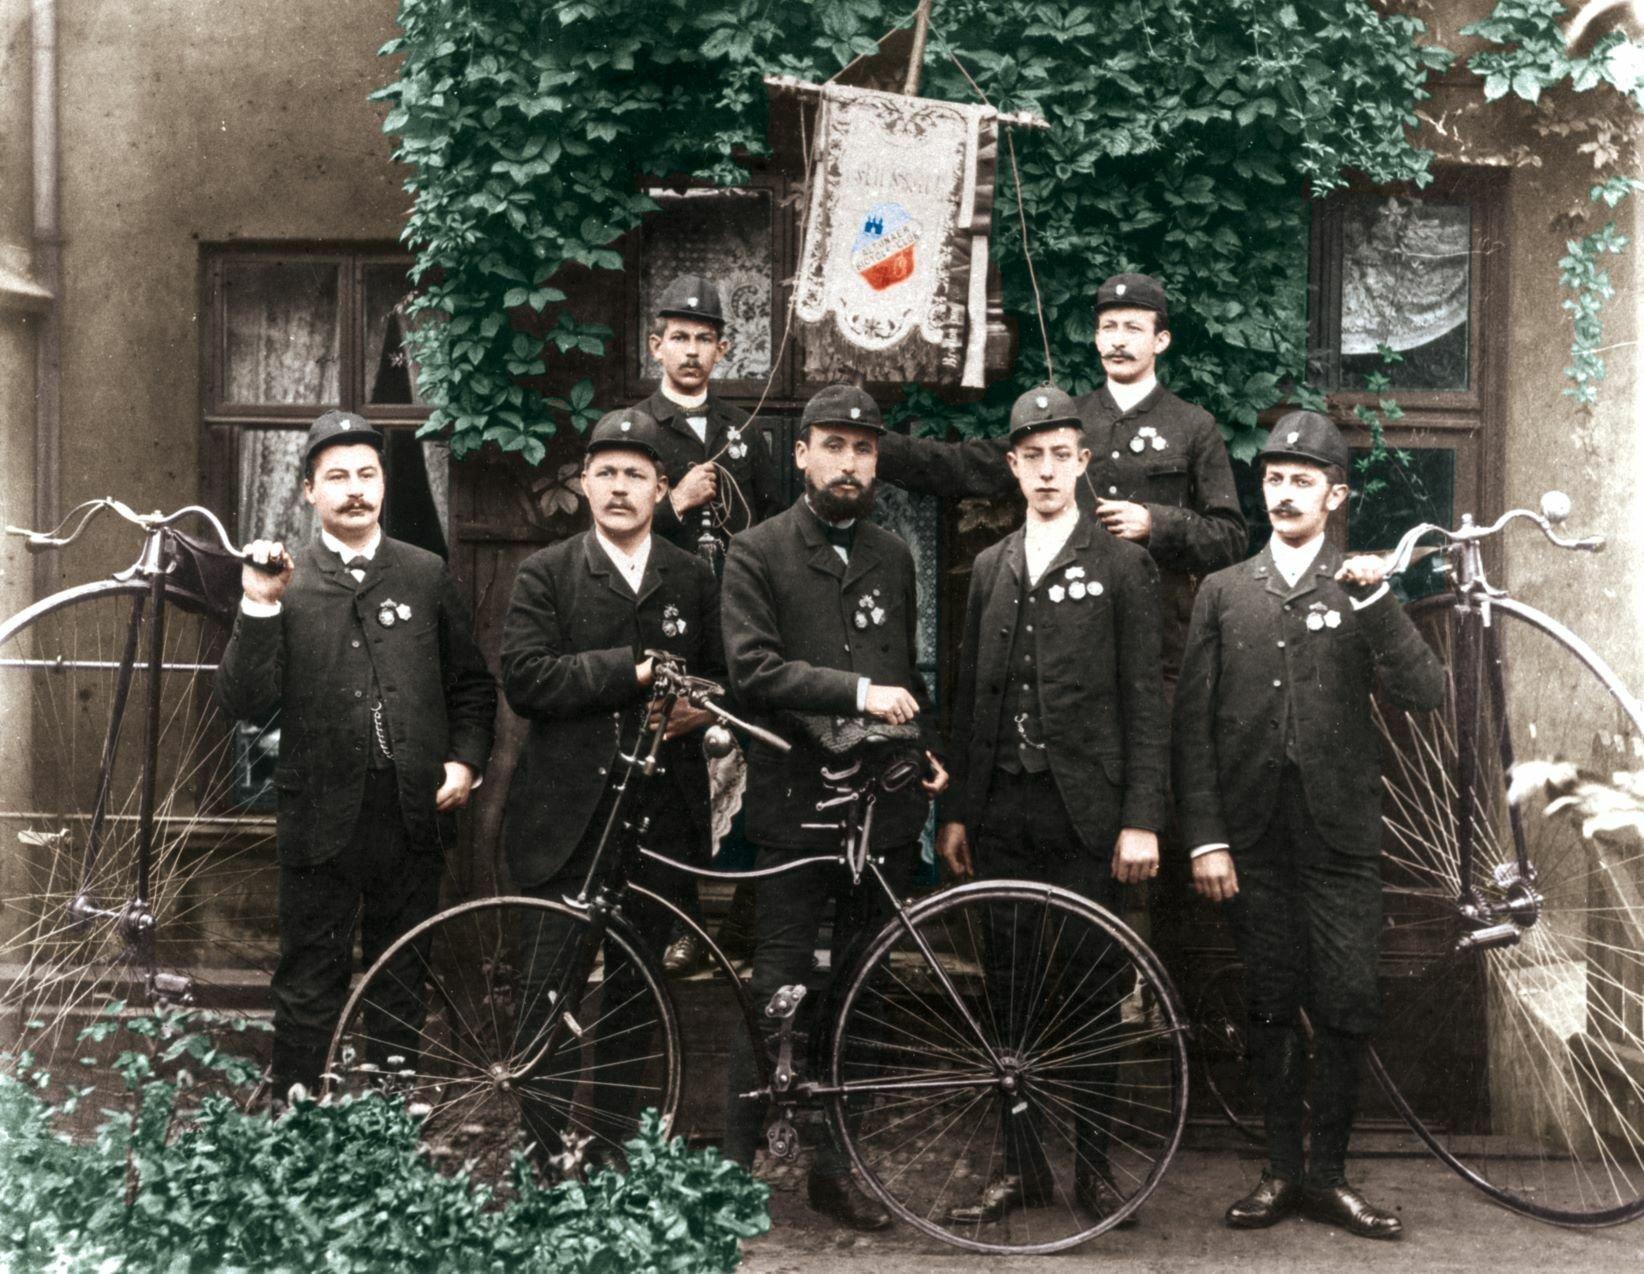 Sieben Männer in Sonntagstracht posieren mit einem Fahrrad, auf dessen Sattel Harro Feddersen, im Zentrum stehend, eine Hand auflegt. In der hinteren Reihe stützen zwei Männer eine Vereins-Standarte.